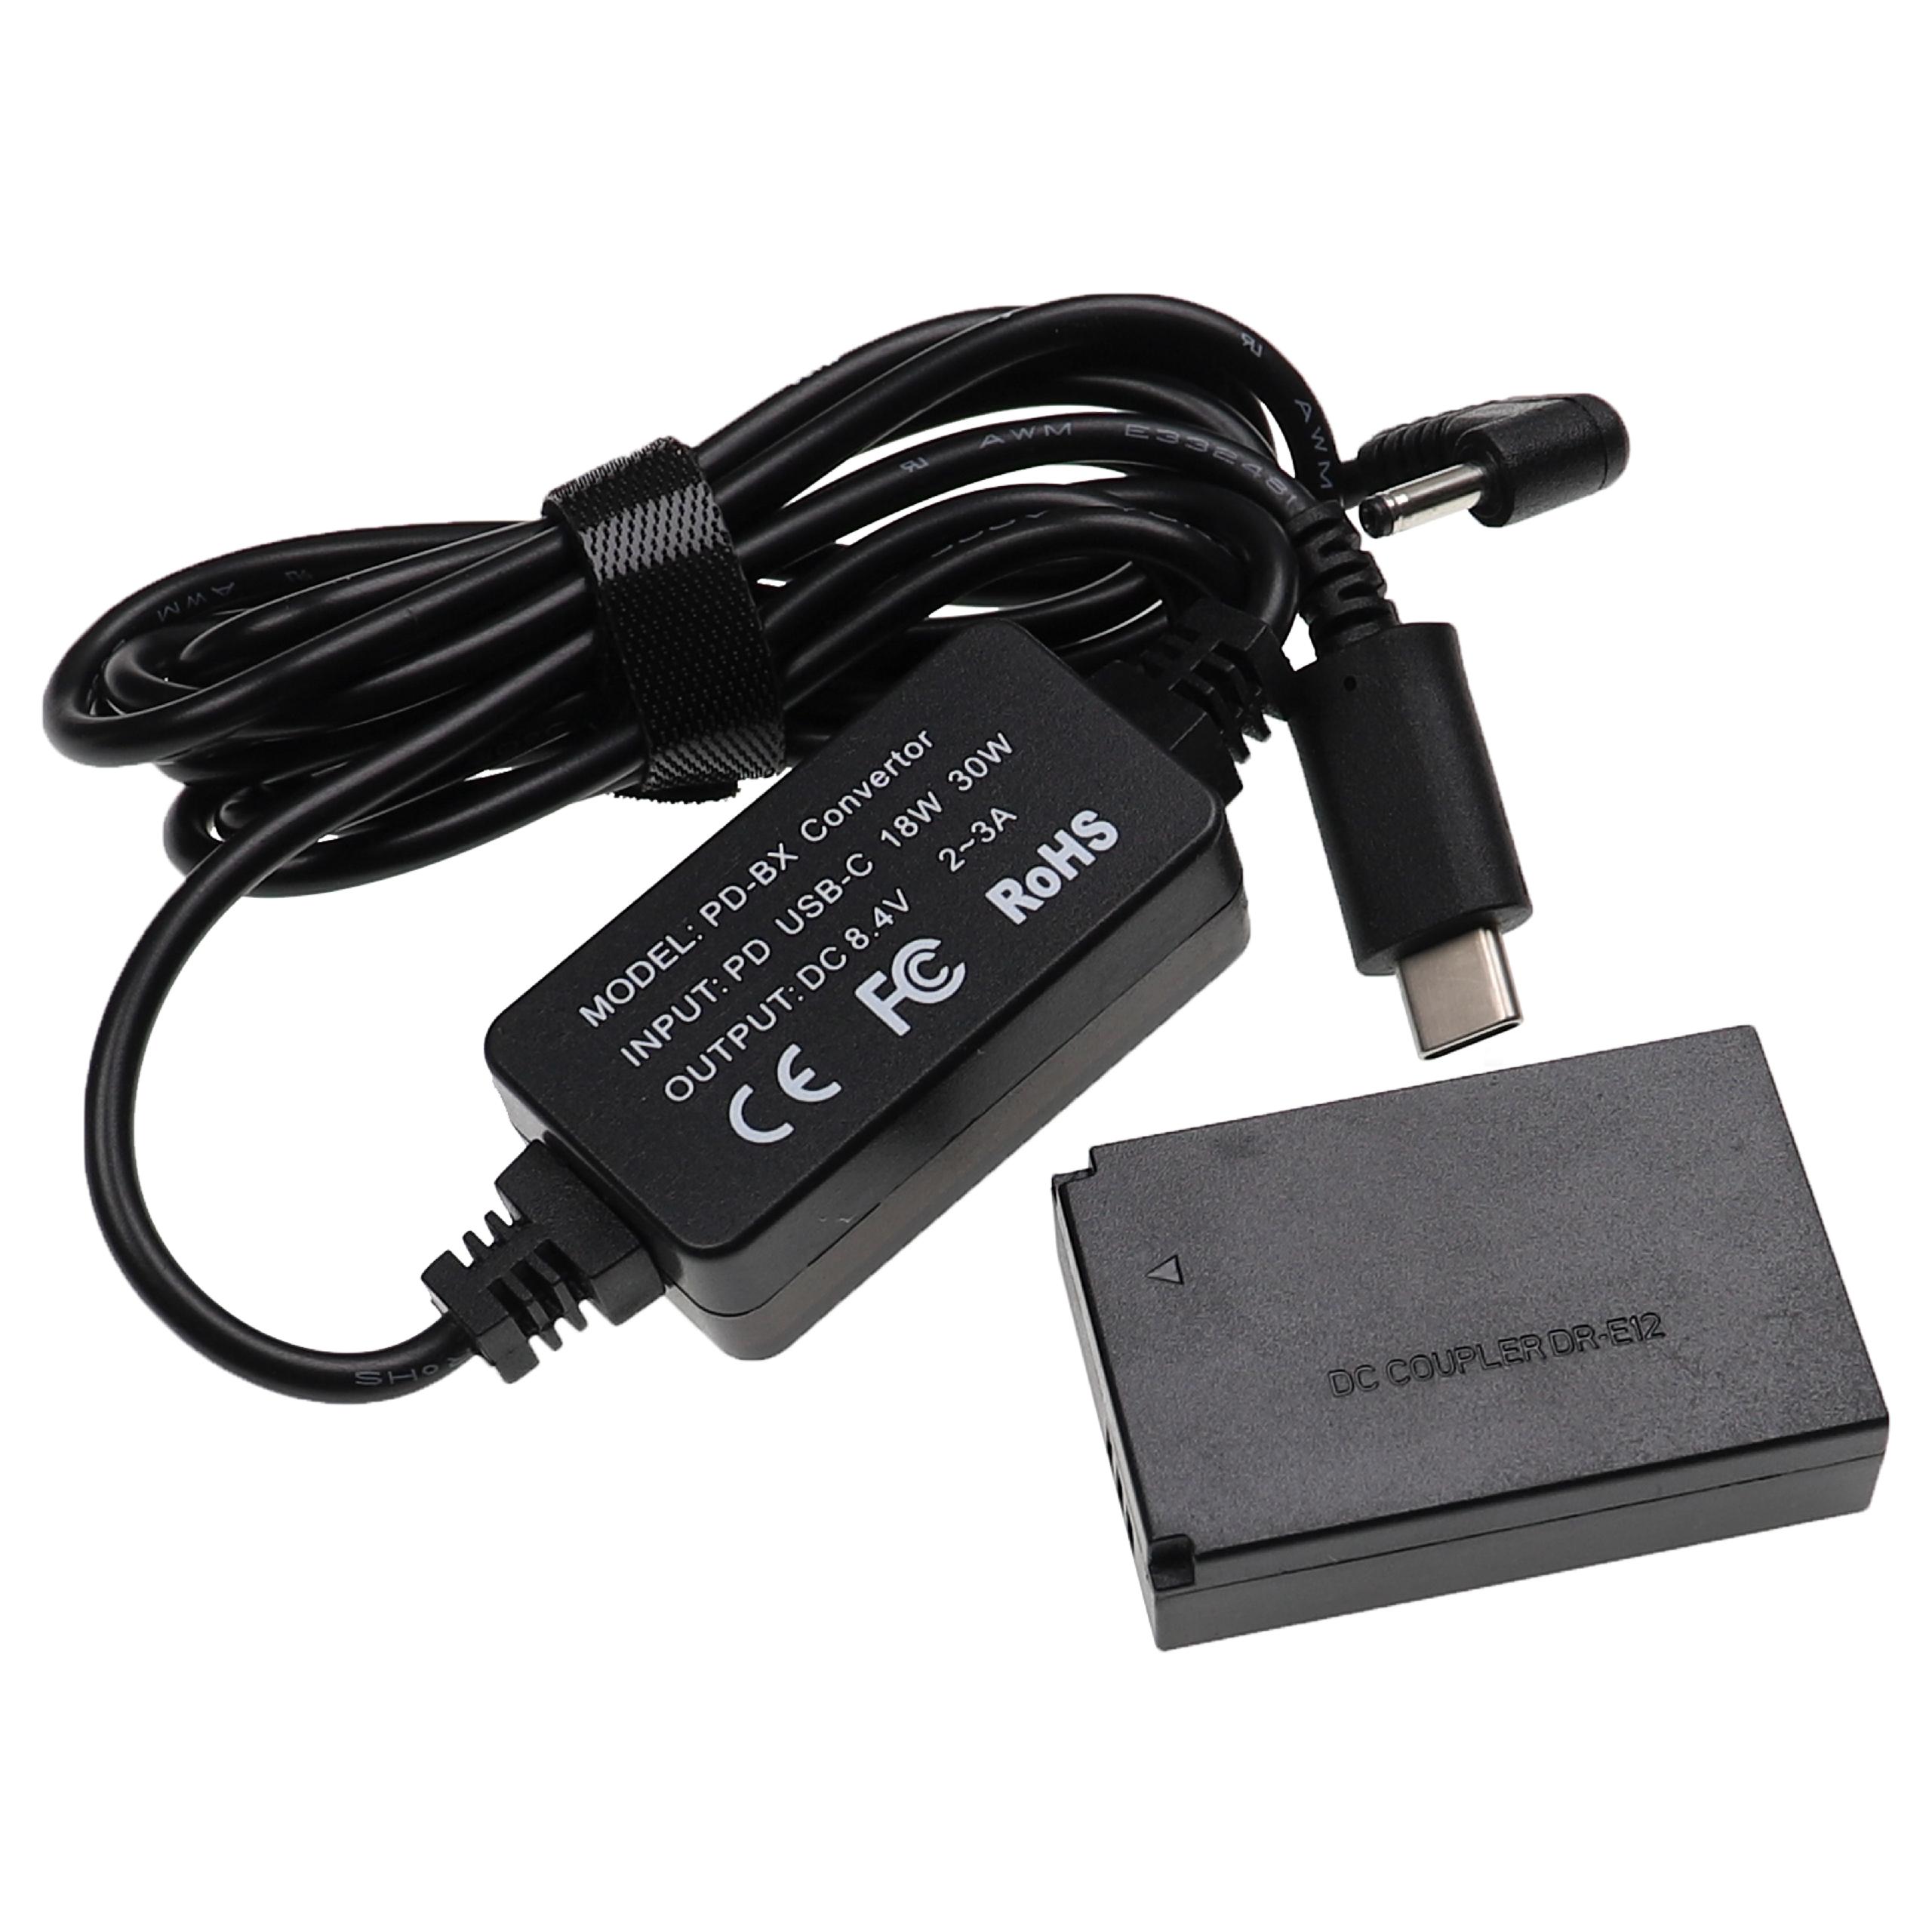 USB Power Supply replaces ACK-E12 for Camera + DC Coupler as Canon DR-E12 - 2 m, 8.4 V 3.0 A